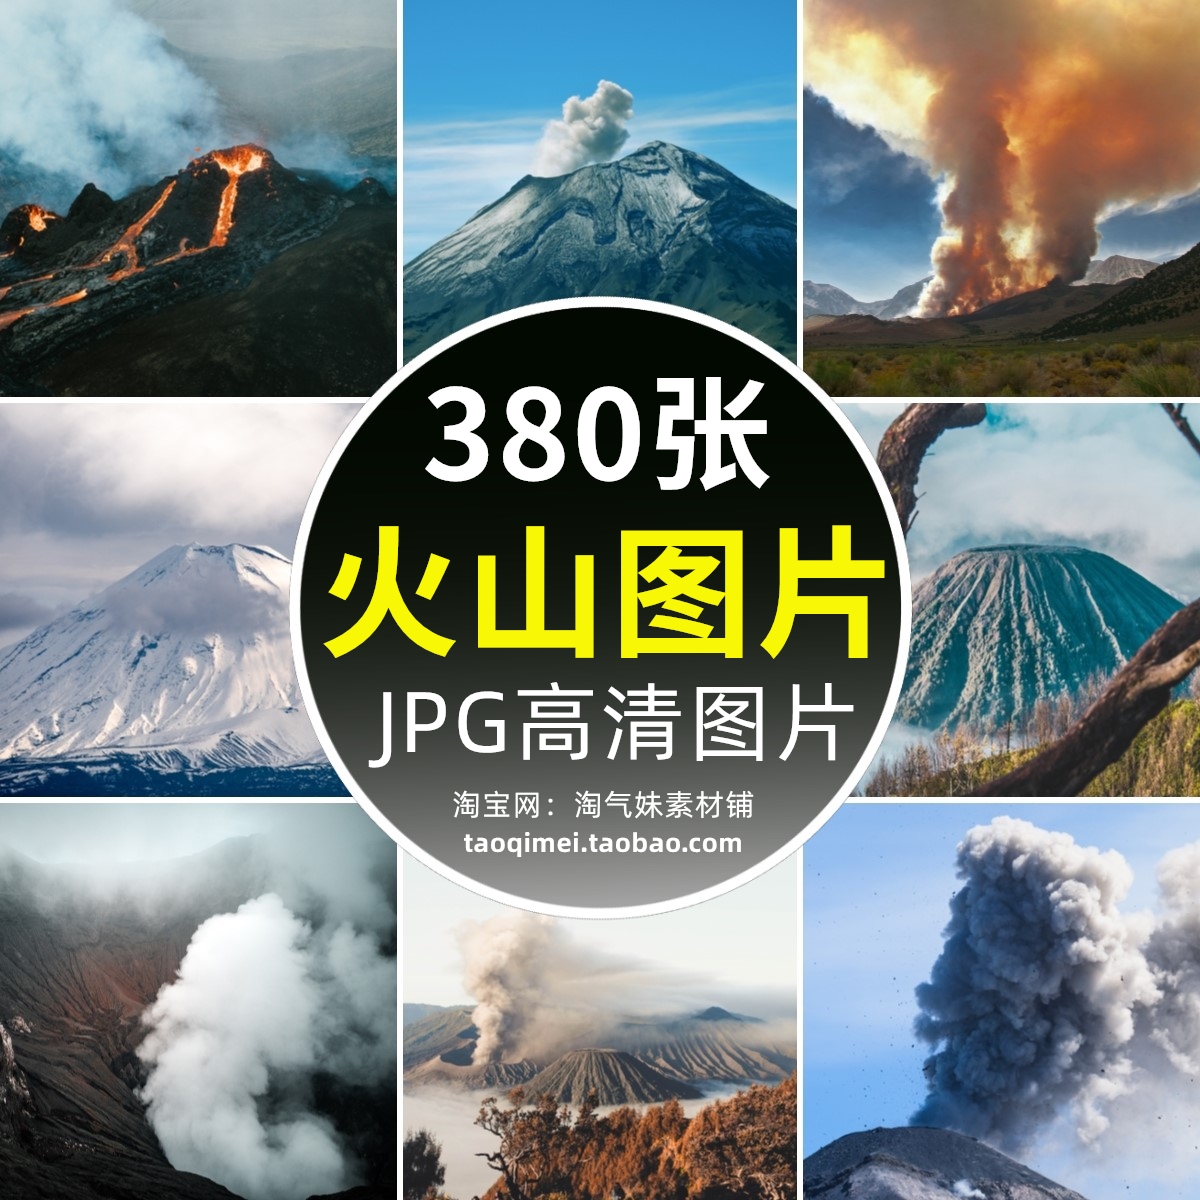 高清JPG火山图片火山口火山湖火山喷发爆发自然地质风景摄影素材